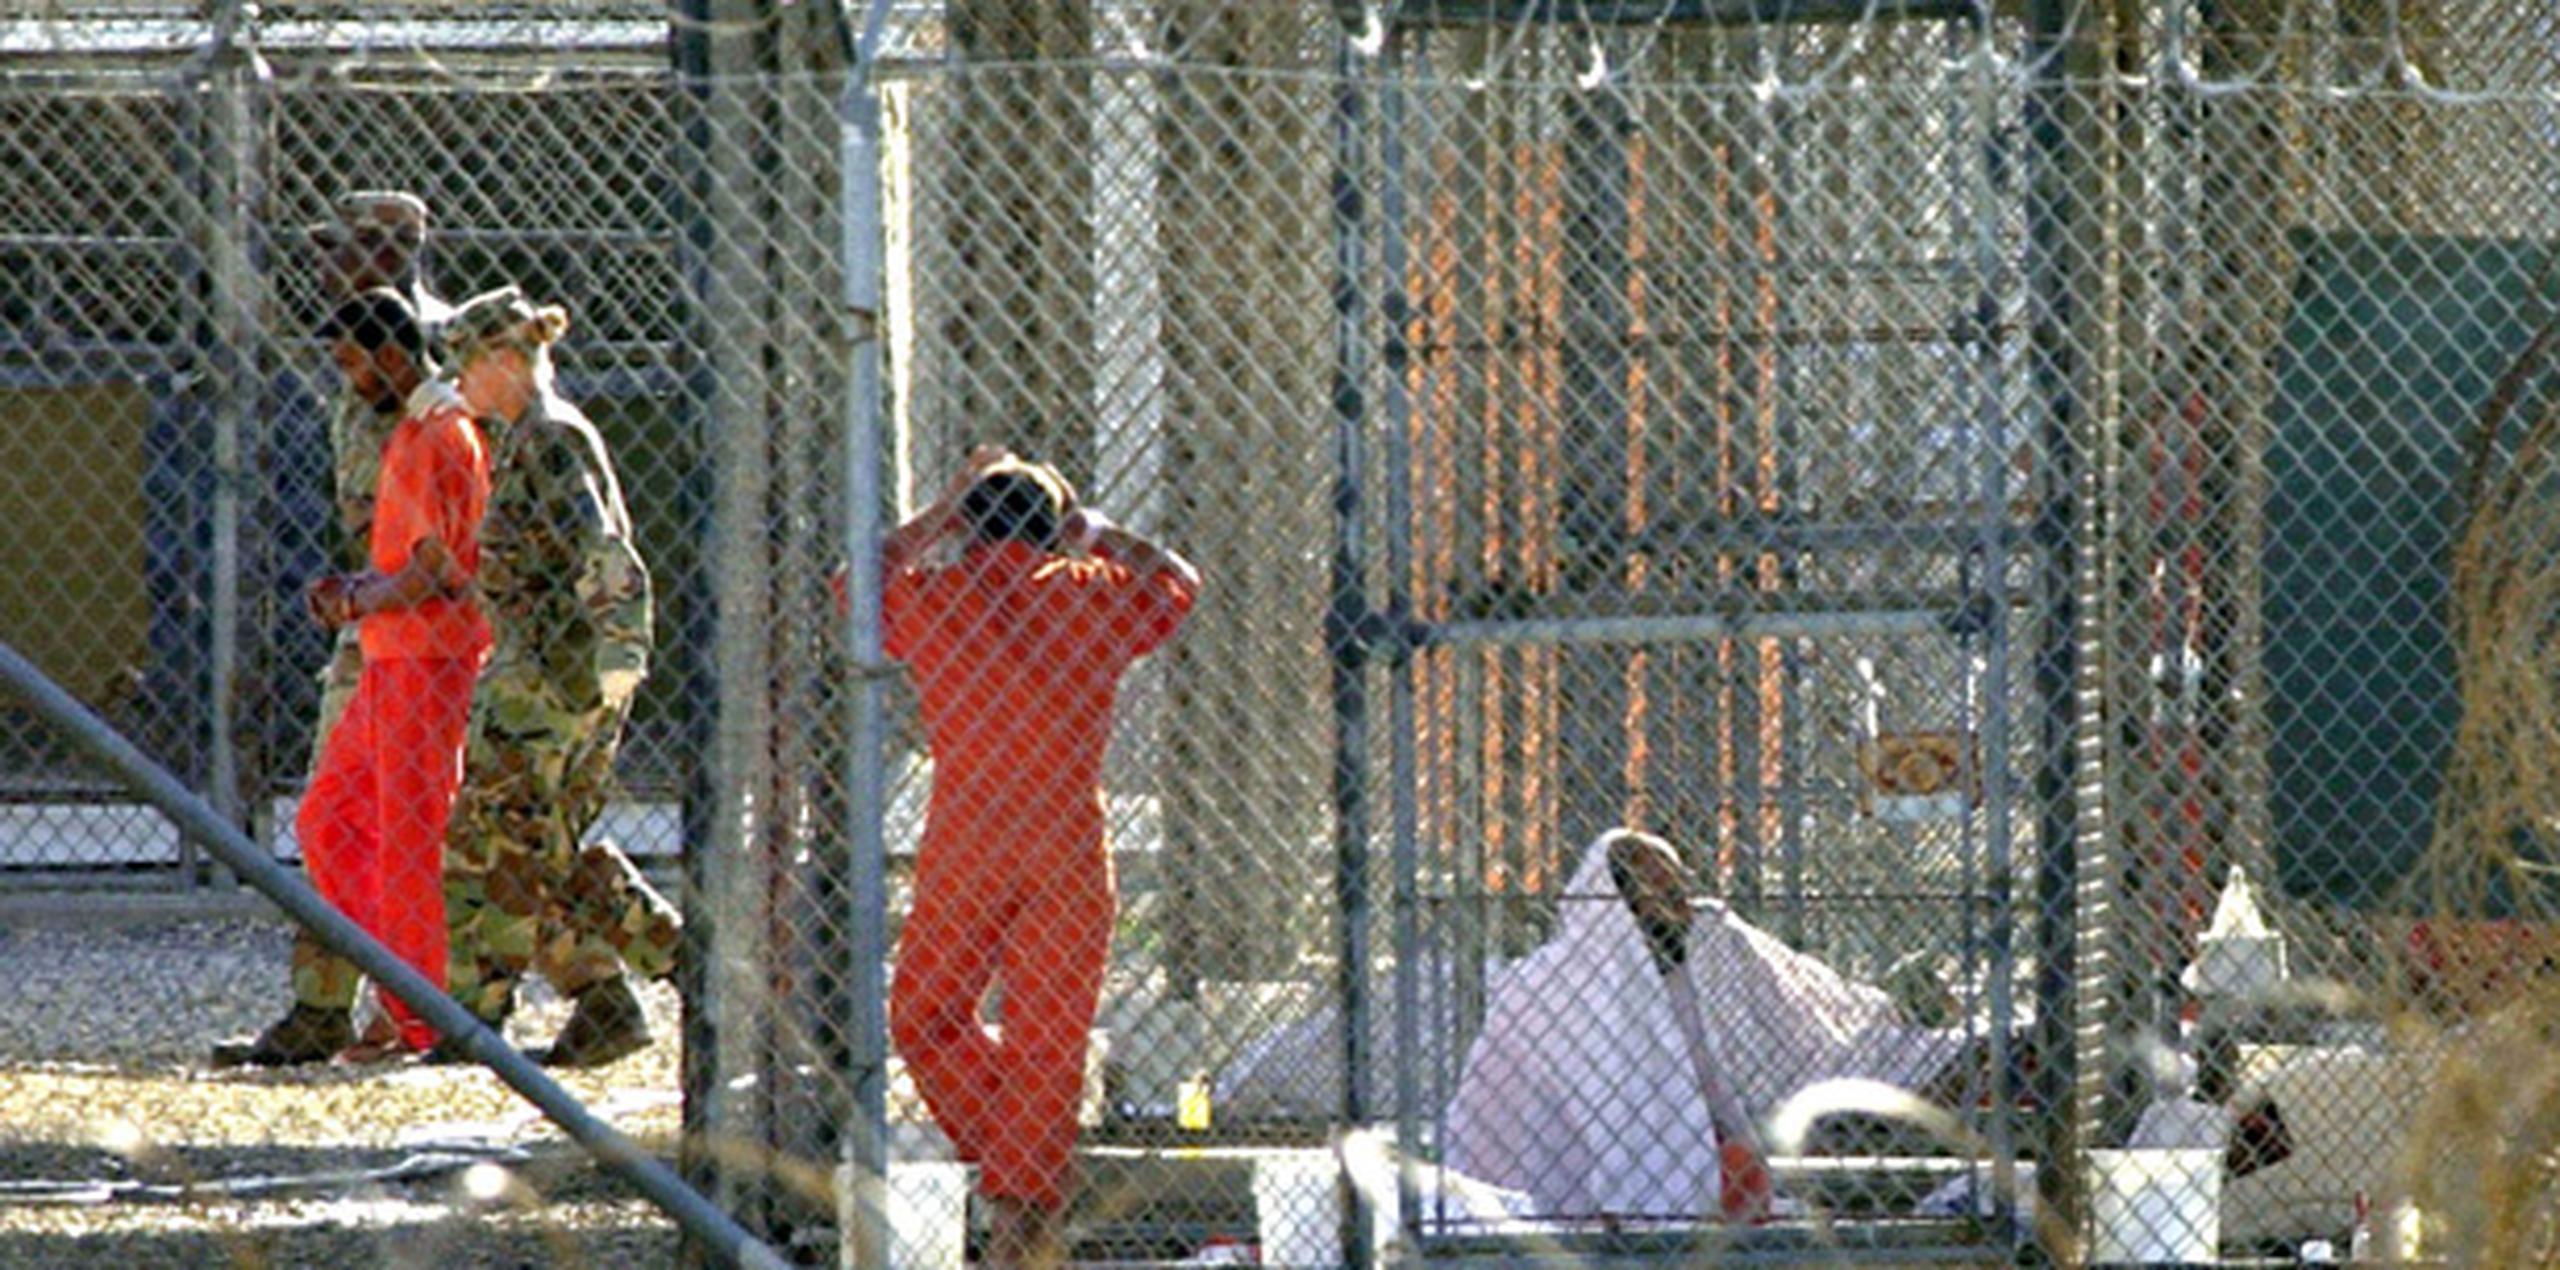 El Proyecto Constitución revisó la manera como los prisioneros fueron detenidos e interrogados en la Bahía de Guantánamo, Afganistán e Irak, y en las prisiones secretas de la CIA. (Archivo)